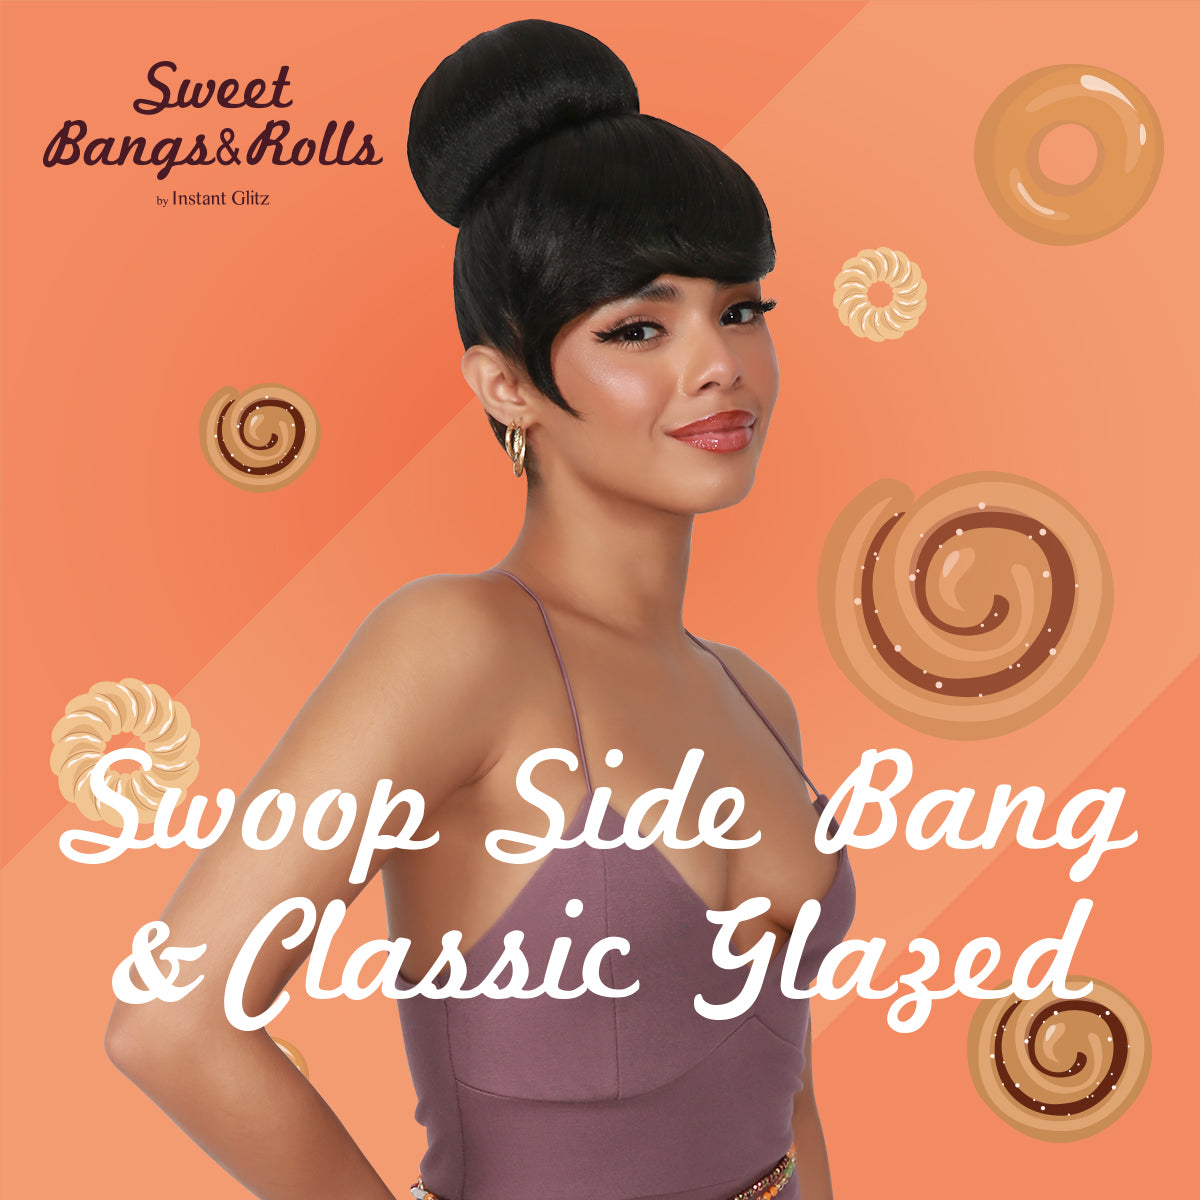 Combination, Swoop Side Bang, Curtain Bang, Layered Bang, Hair Piece, Classic Glazed, Donut Bun, Medium Bun